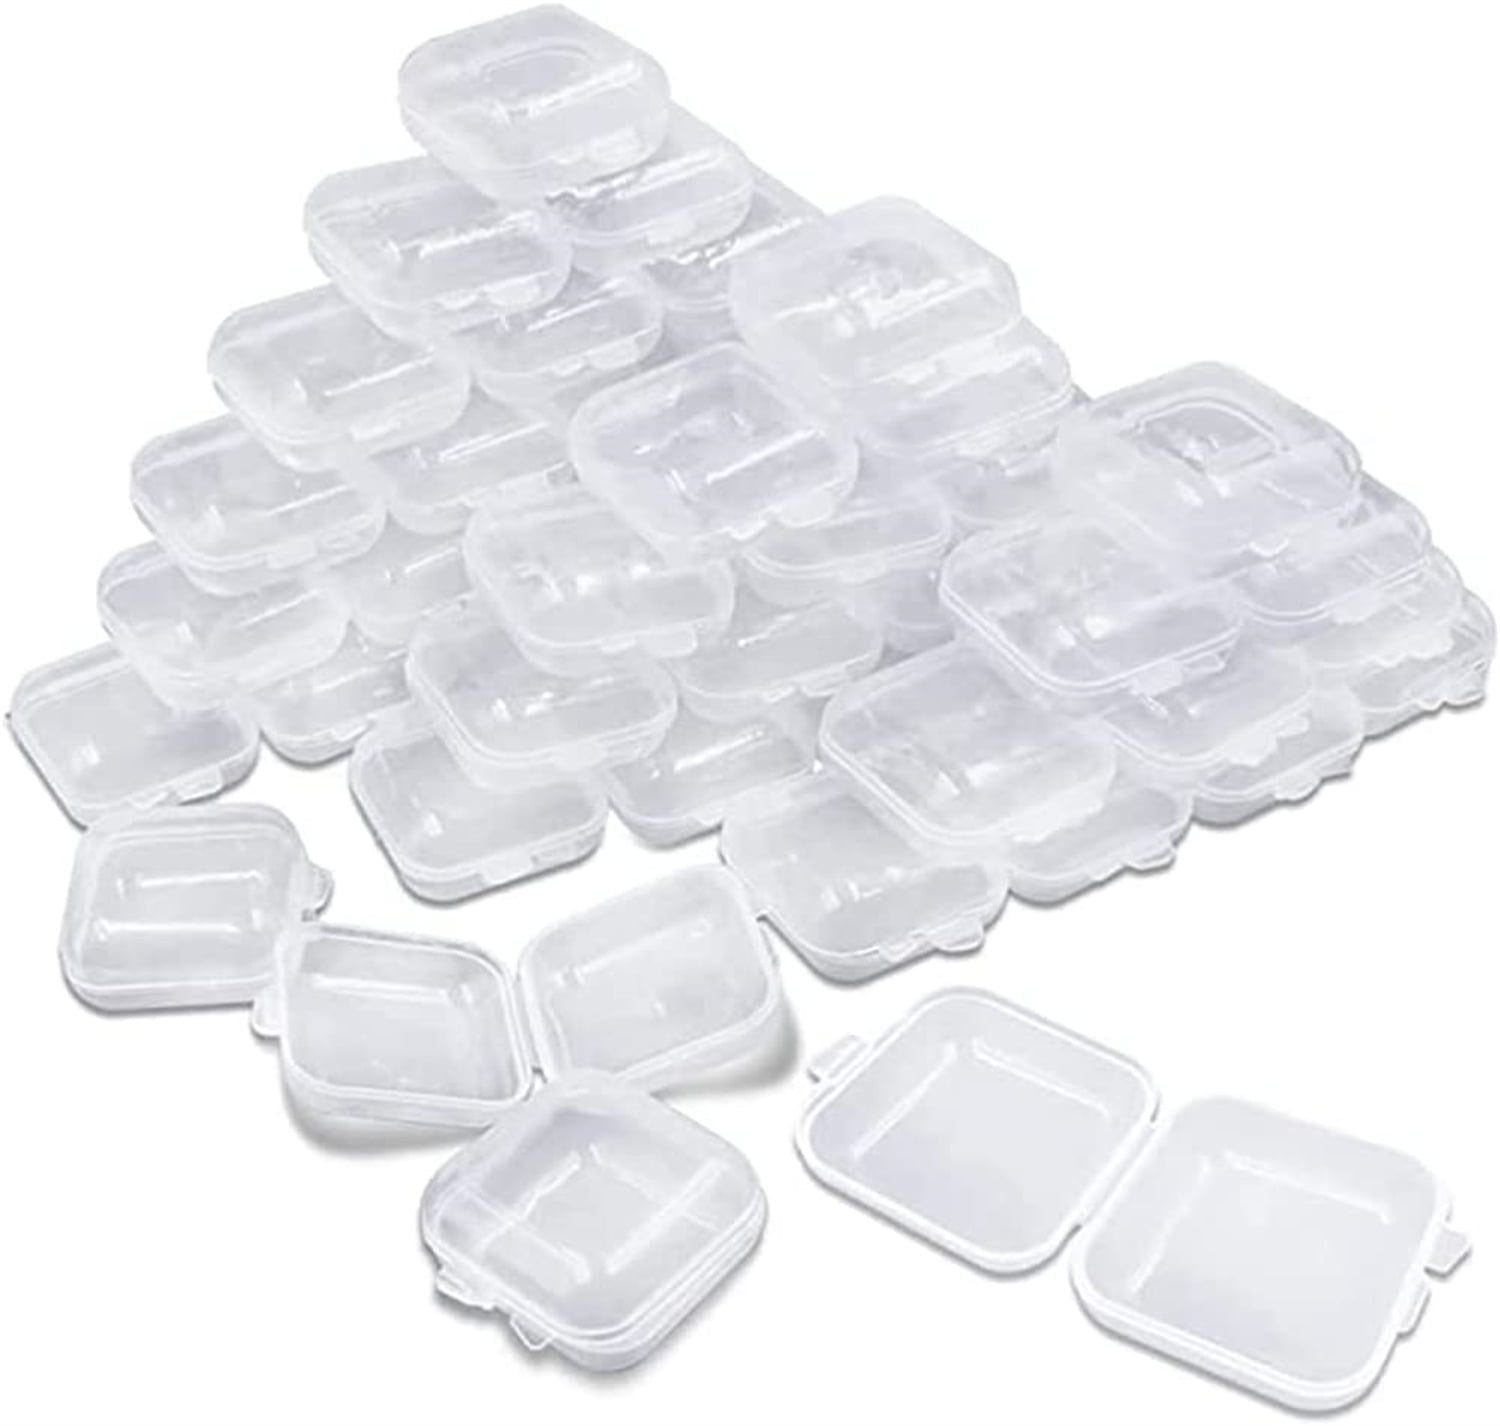 50 Small Clear Plastic Jewelry Organizer Ziplock PVC Bags 2X3,Little  Transparent